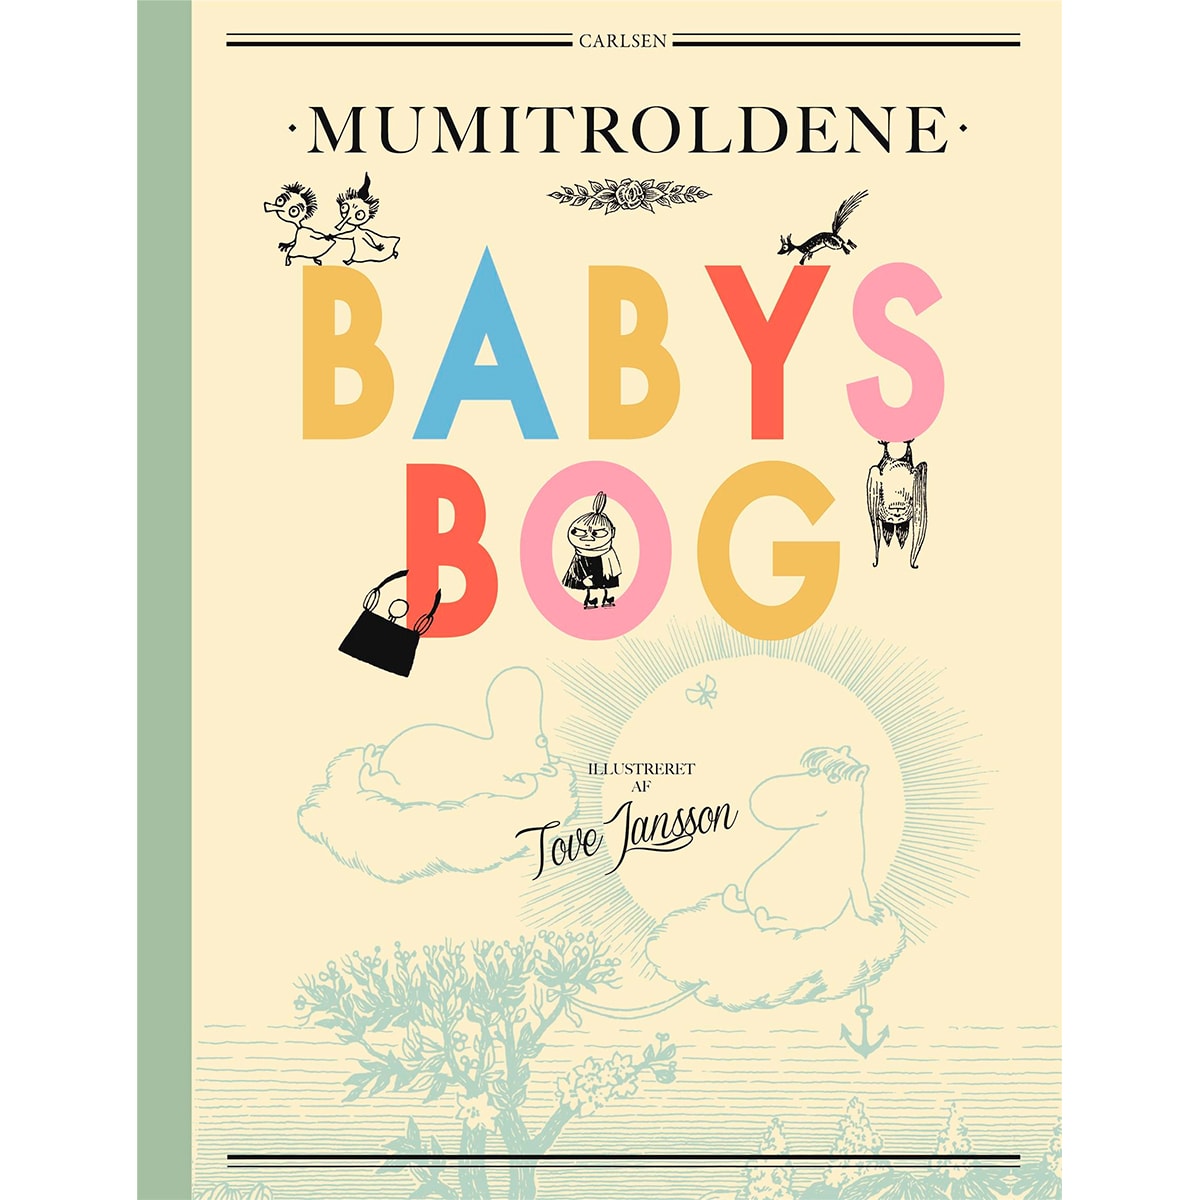 En flot babybog med illustrationer og citater fra Mumitrolde-bøgerne